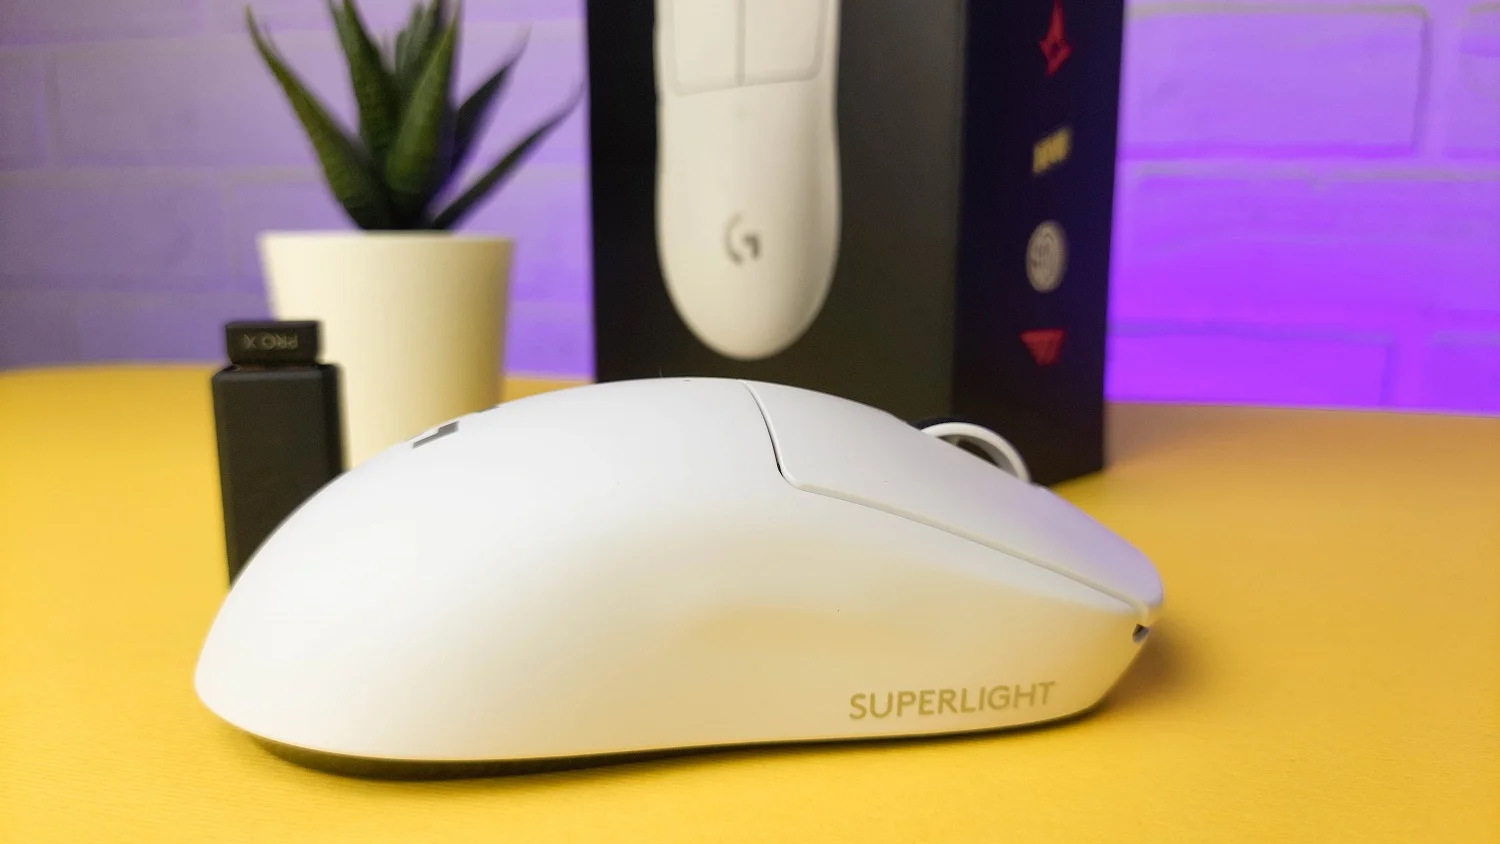 Обзор Logitech G Pro X Superlight: что может дорогая ультралегкая игровая мышка - фото 11